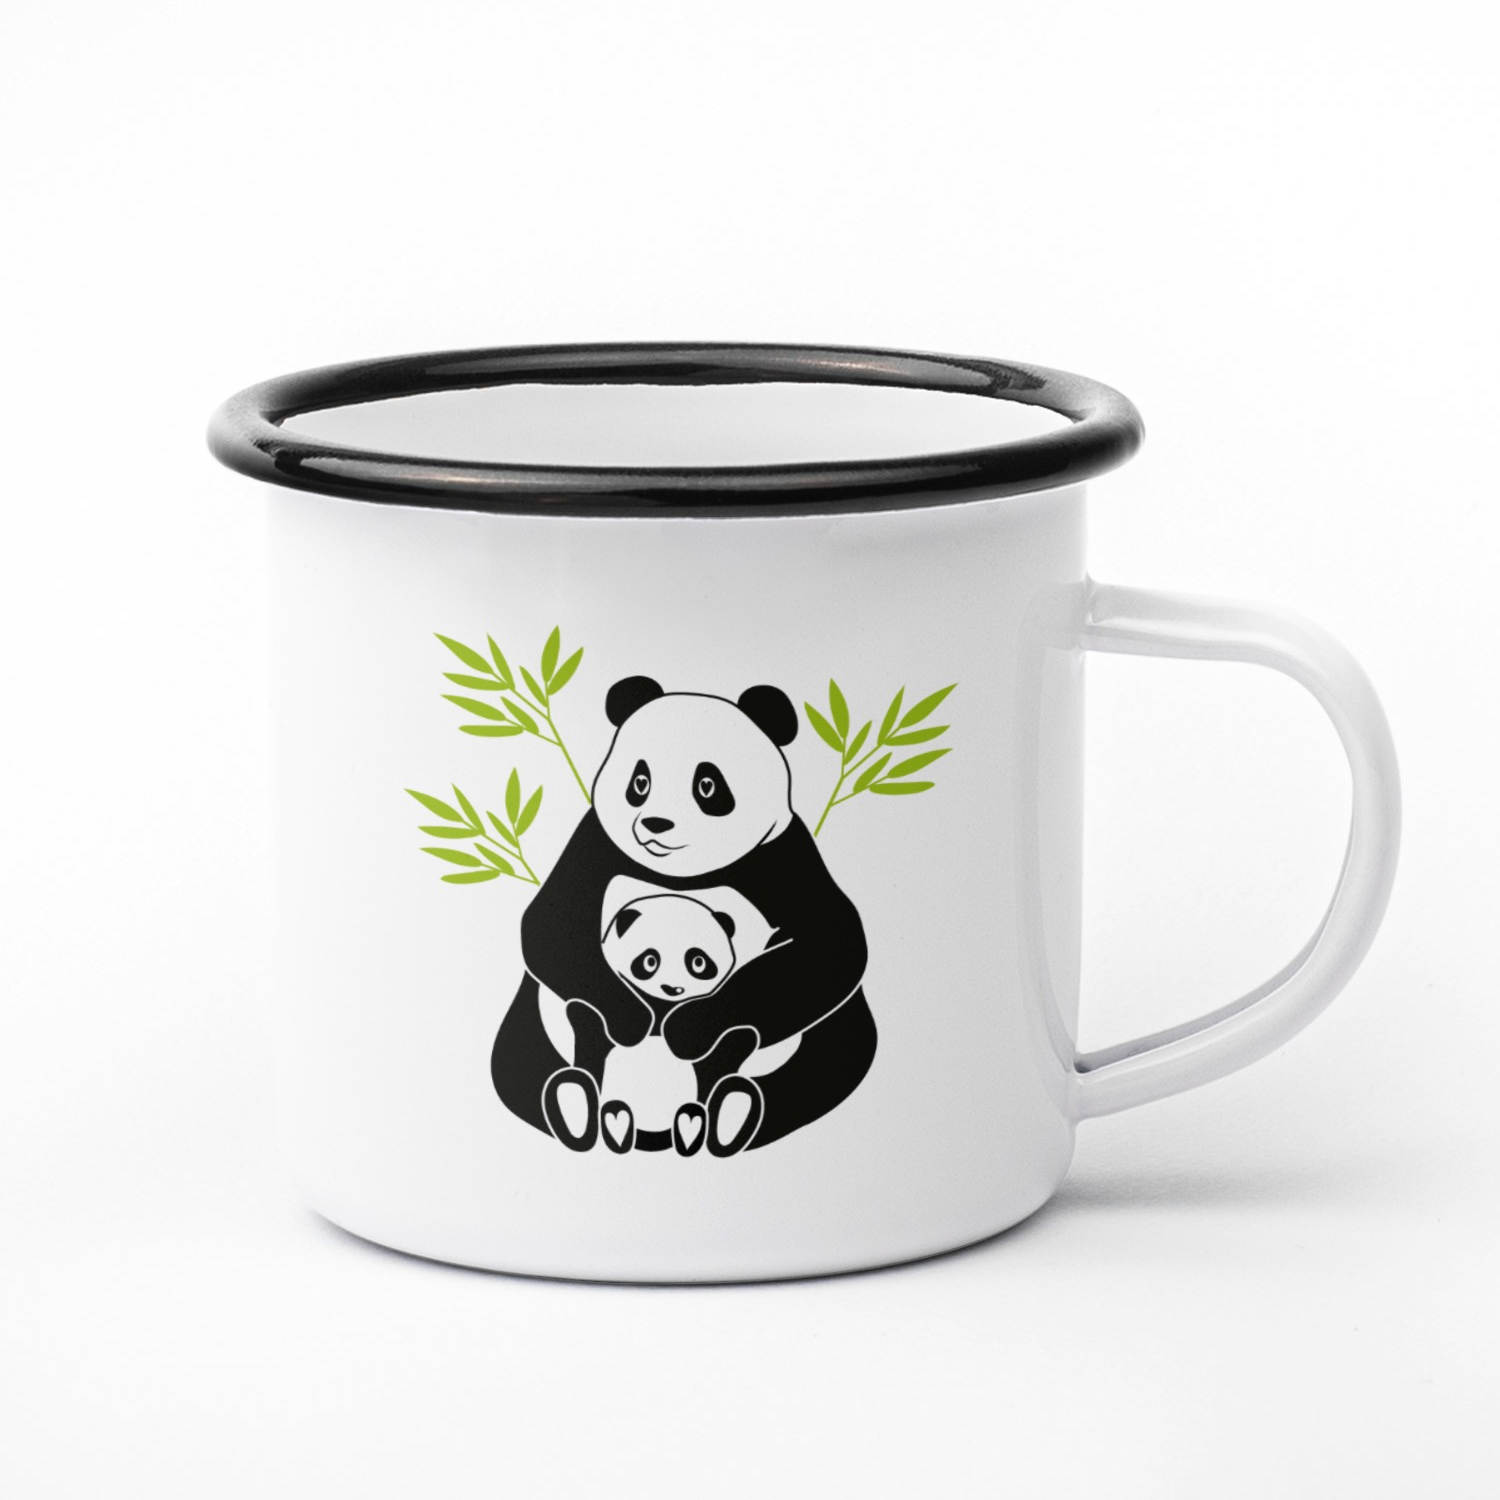 Designmugg - Panda